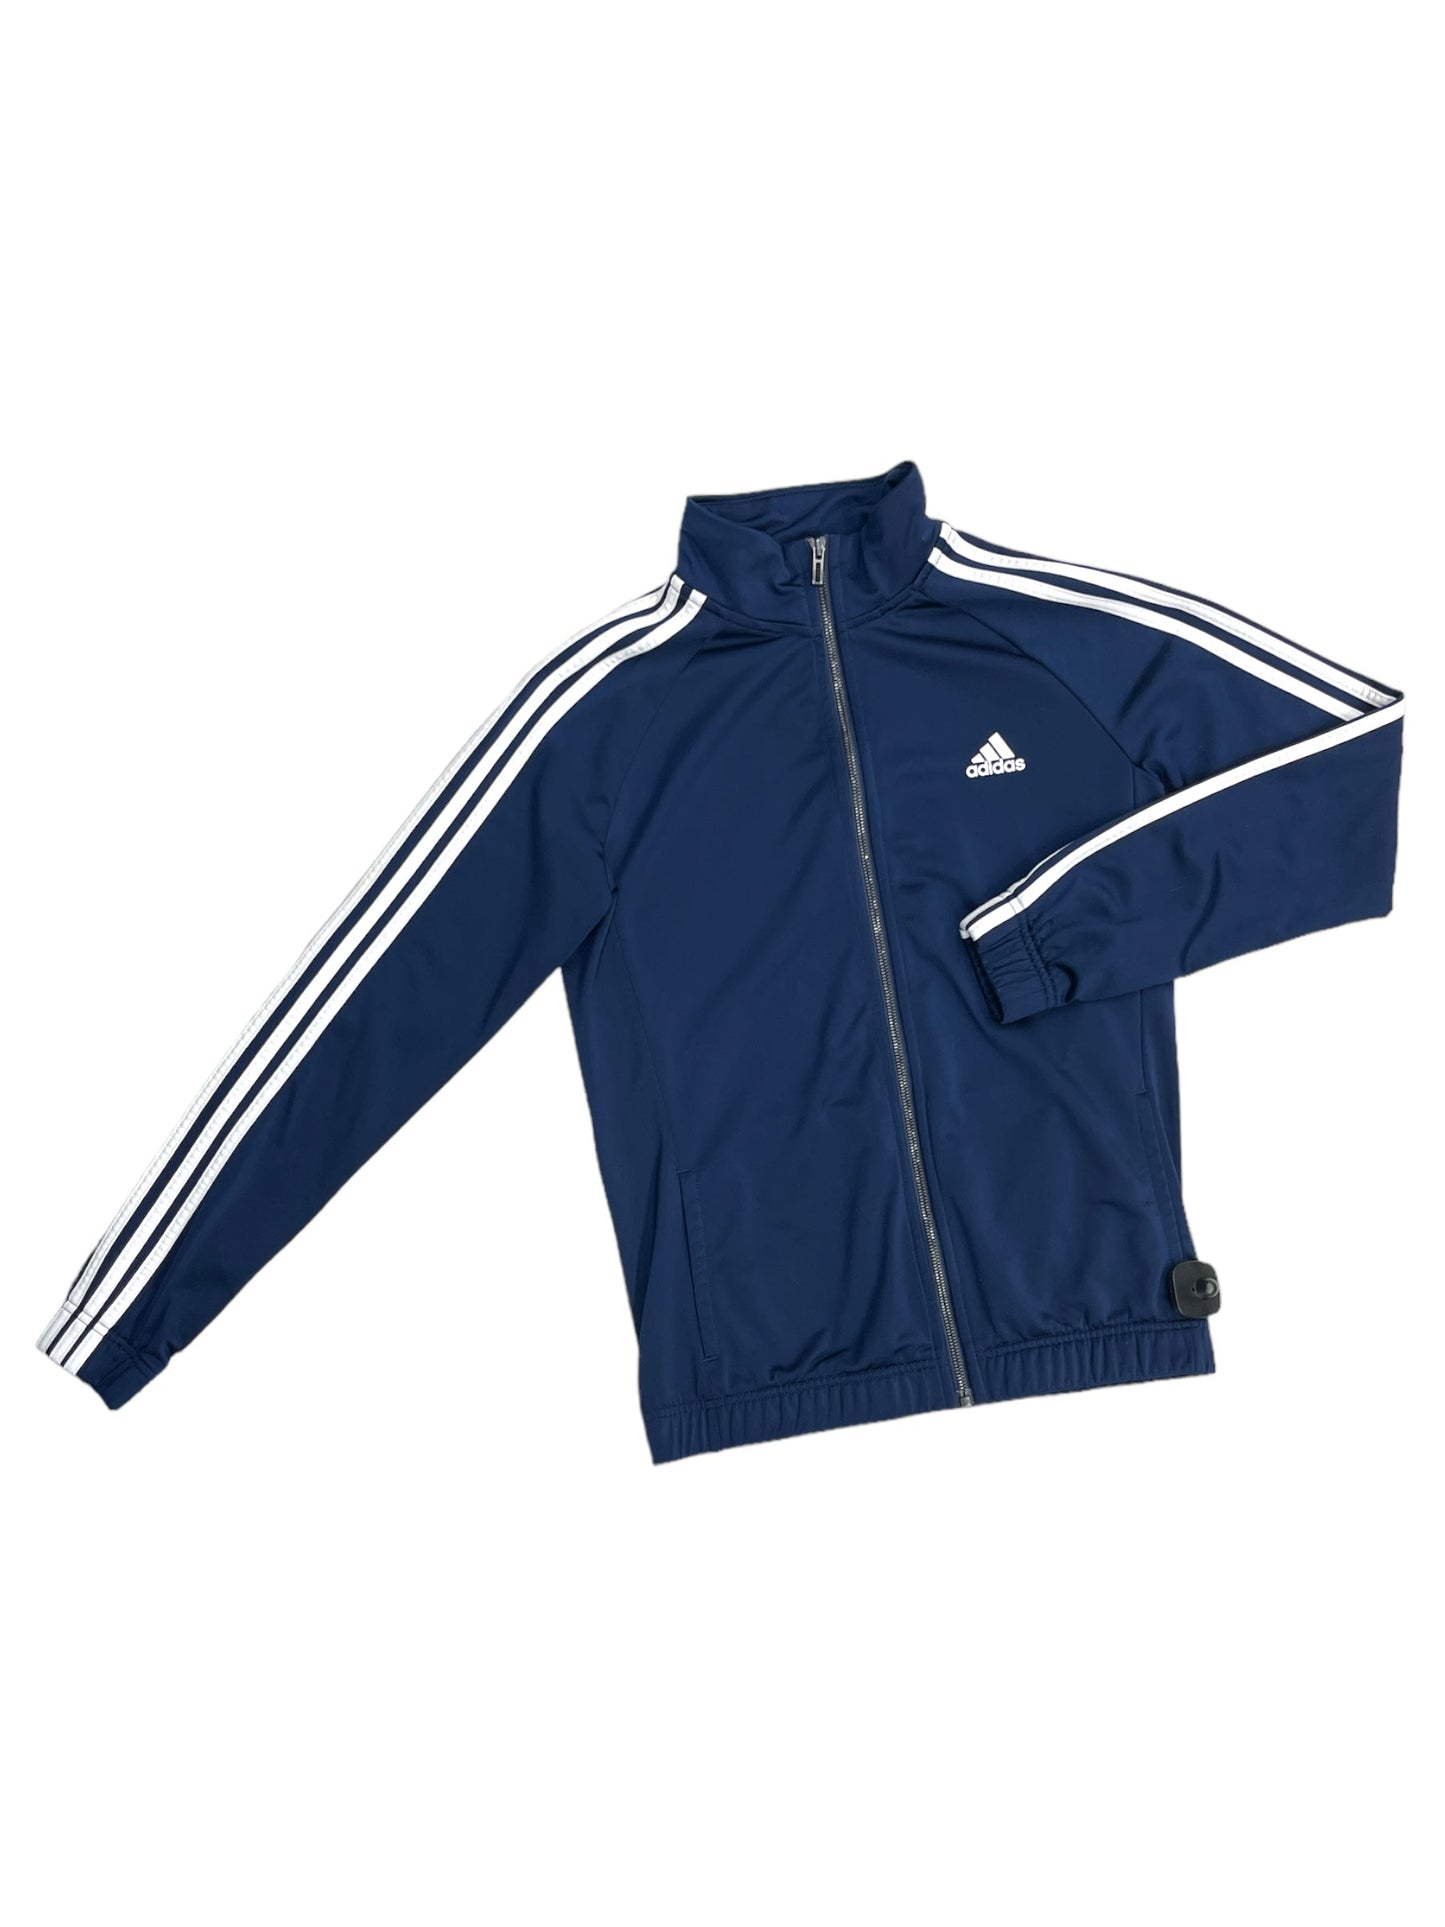 Navy Athletic Jacket Adidas, Size M